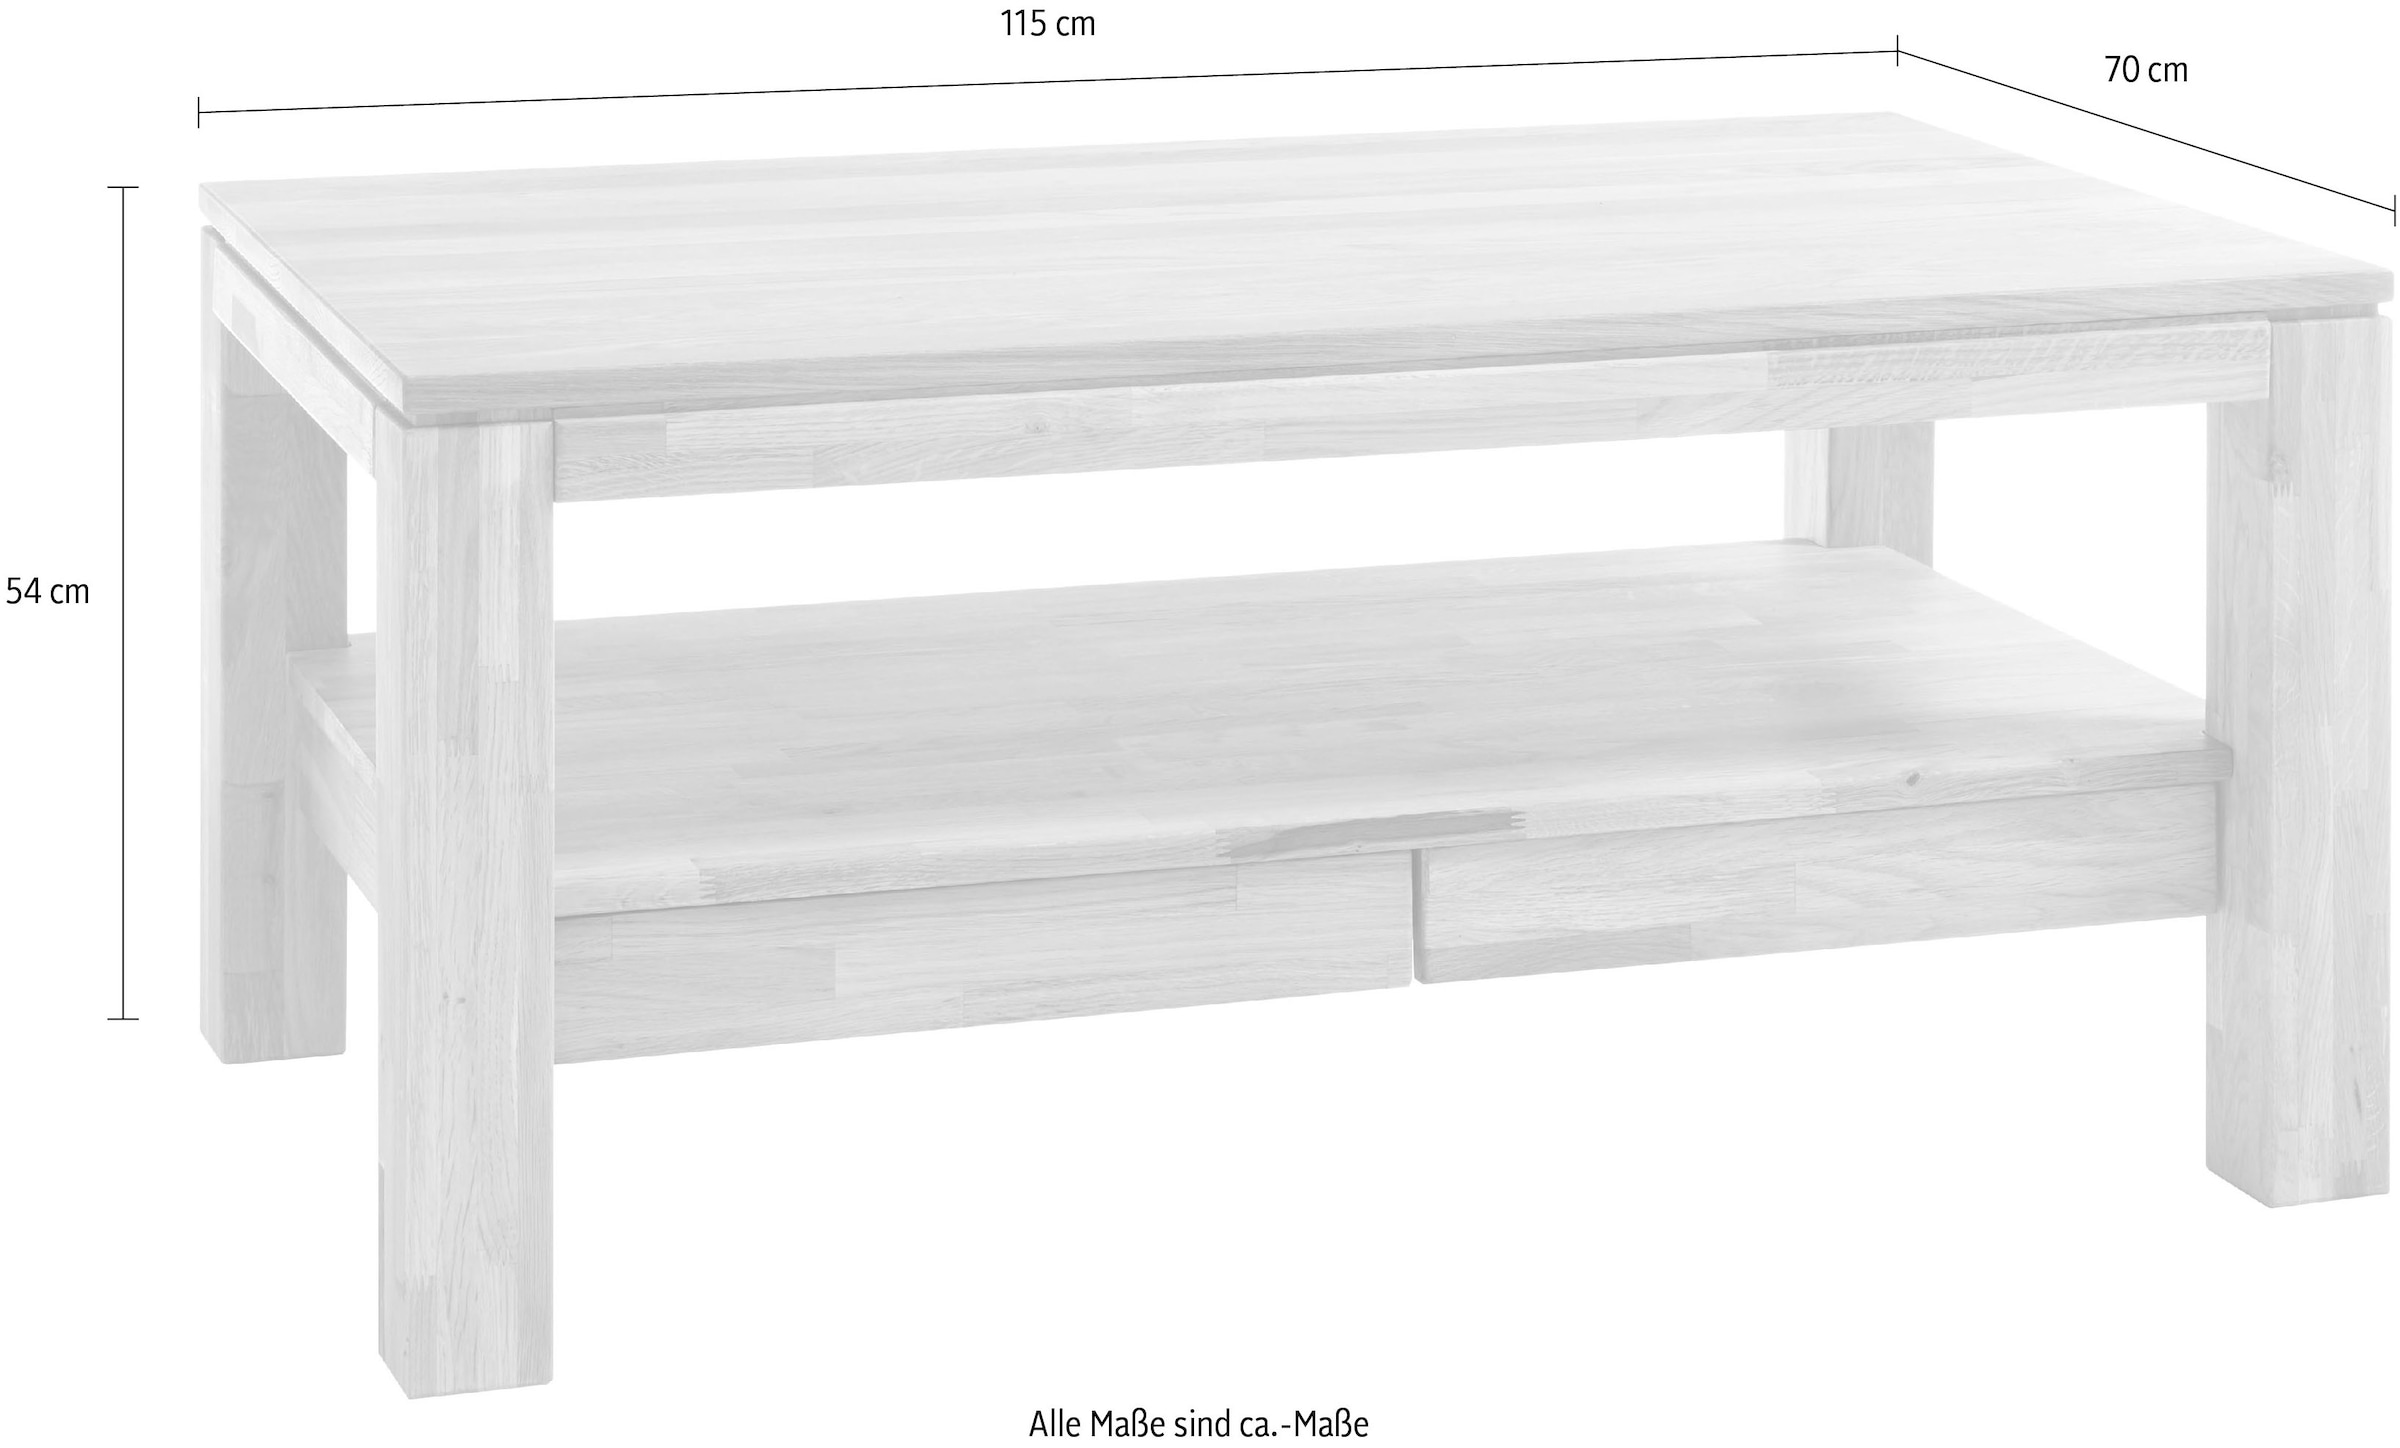 MCA furniture Couchtisch, Couchtisch Massivholz mit Schubladen